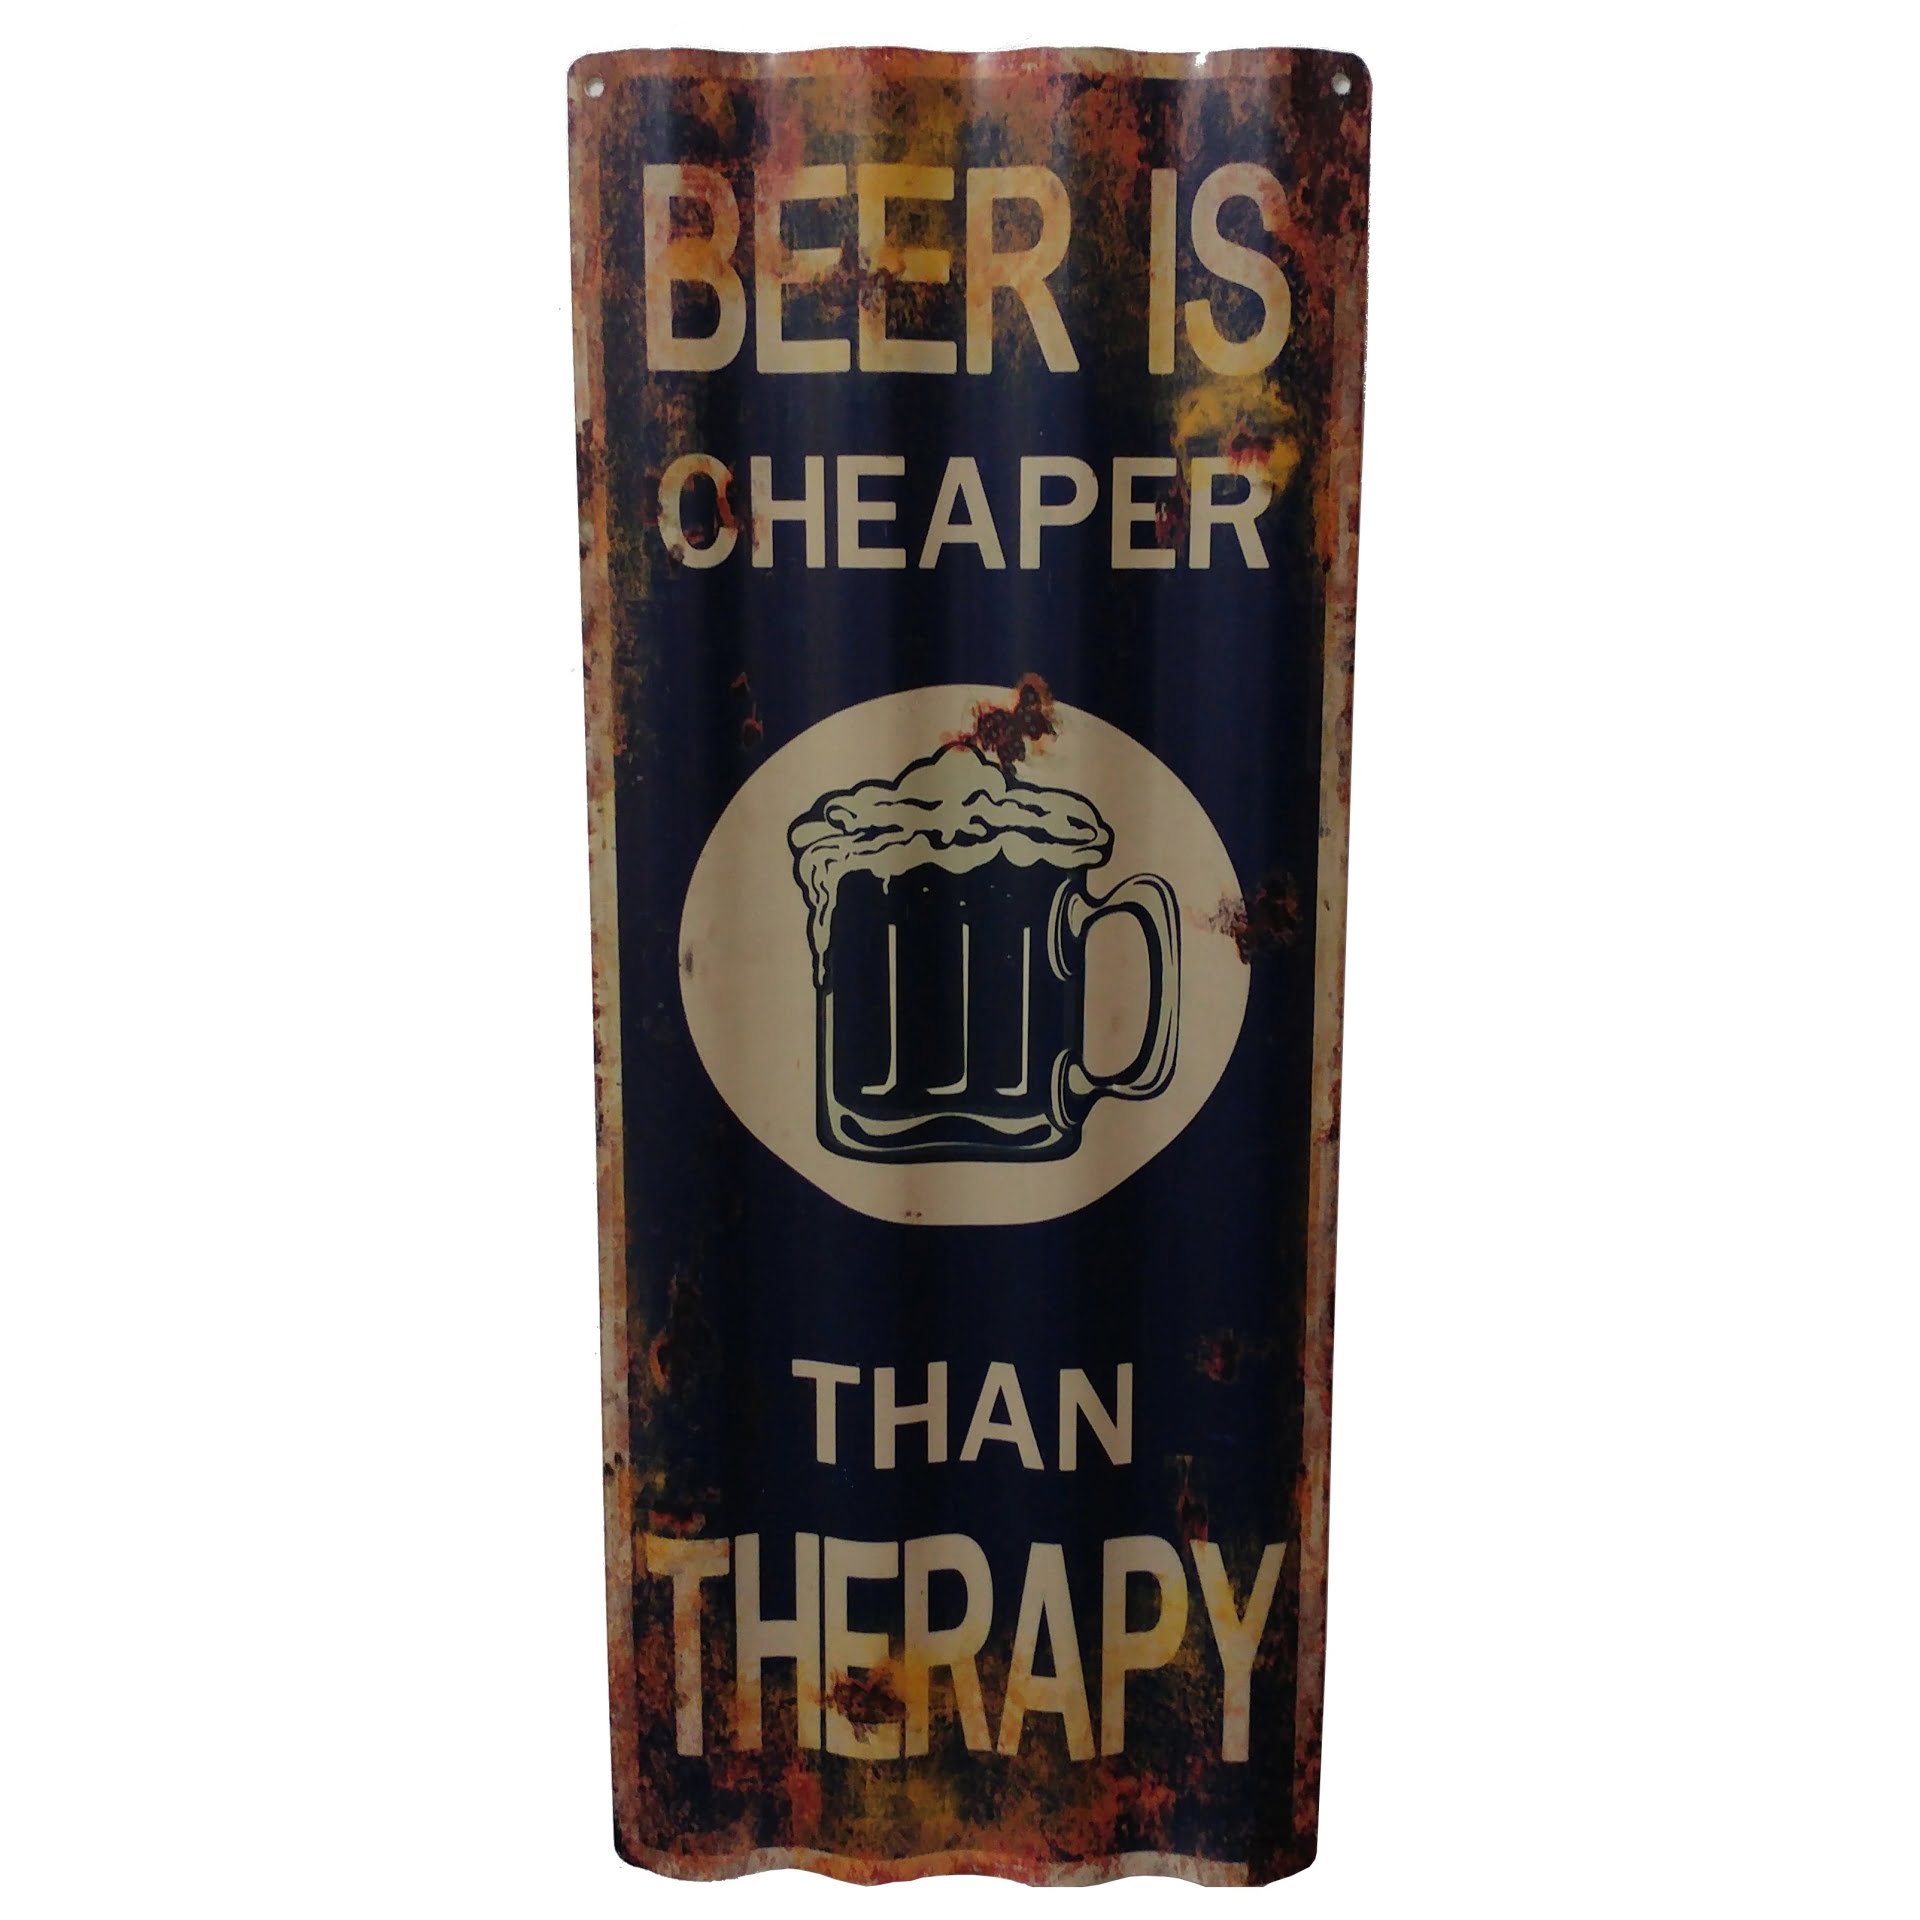 szyld retro metalowy reklamujący piwo